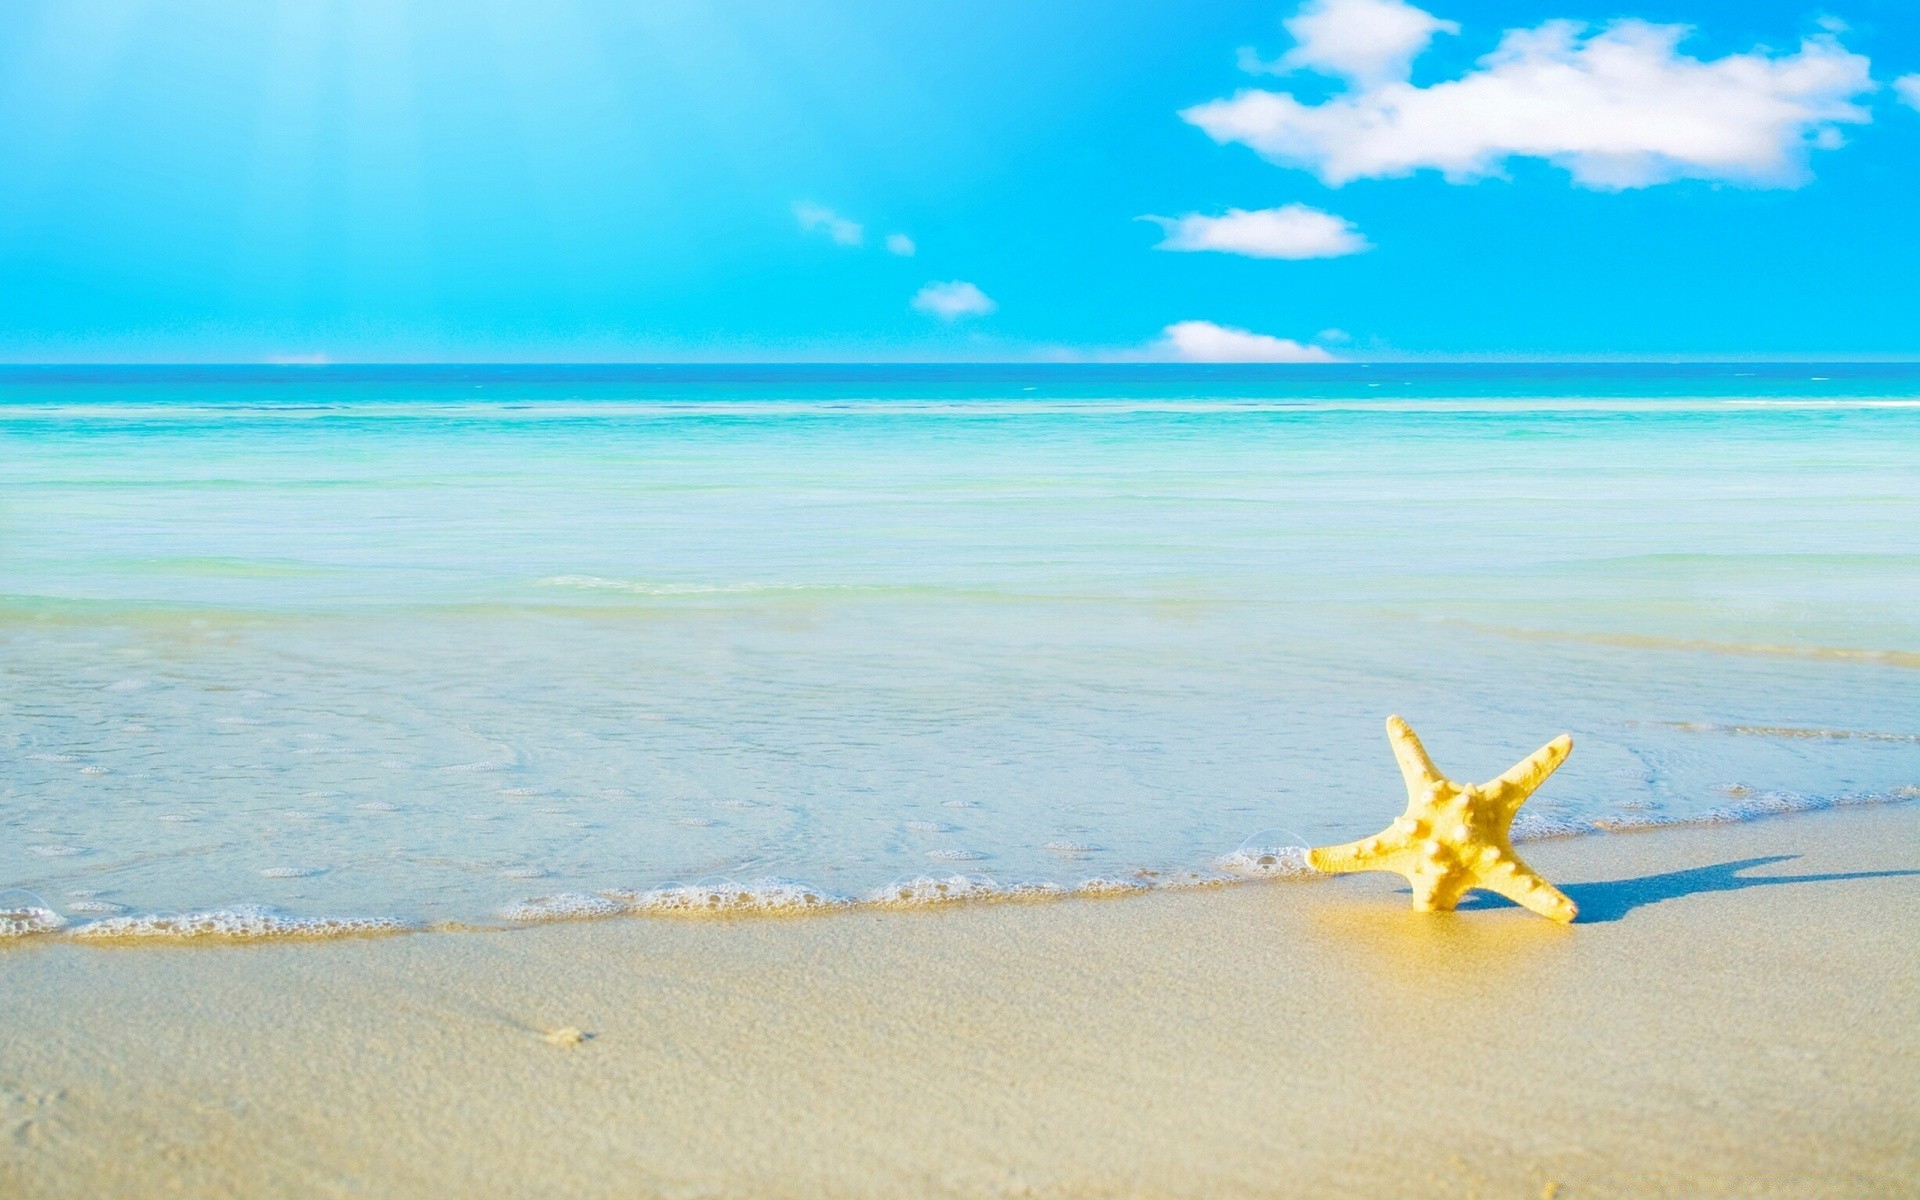 море и океан пляж песок воды моря море путешествия океан лето прибой отпуск тропический небо остров пейзаж солнце хорошую погоду морская звезда пейзаж волна